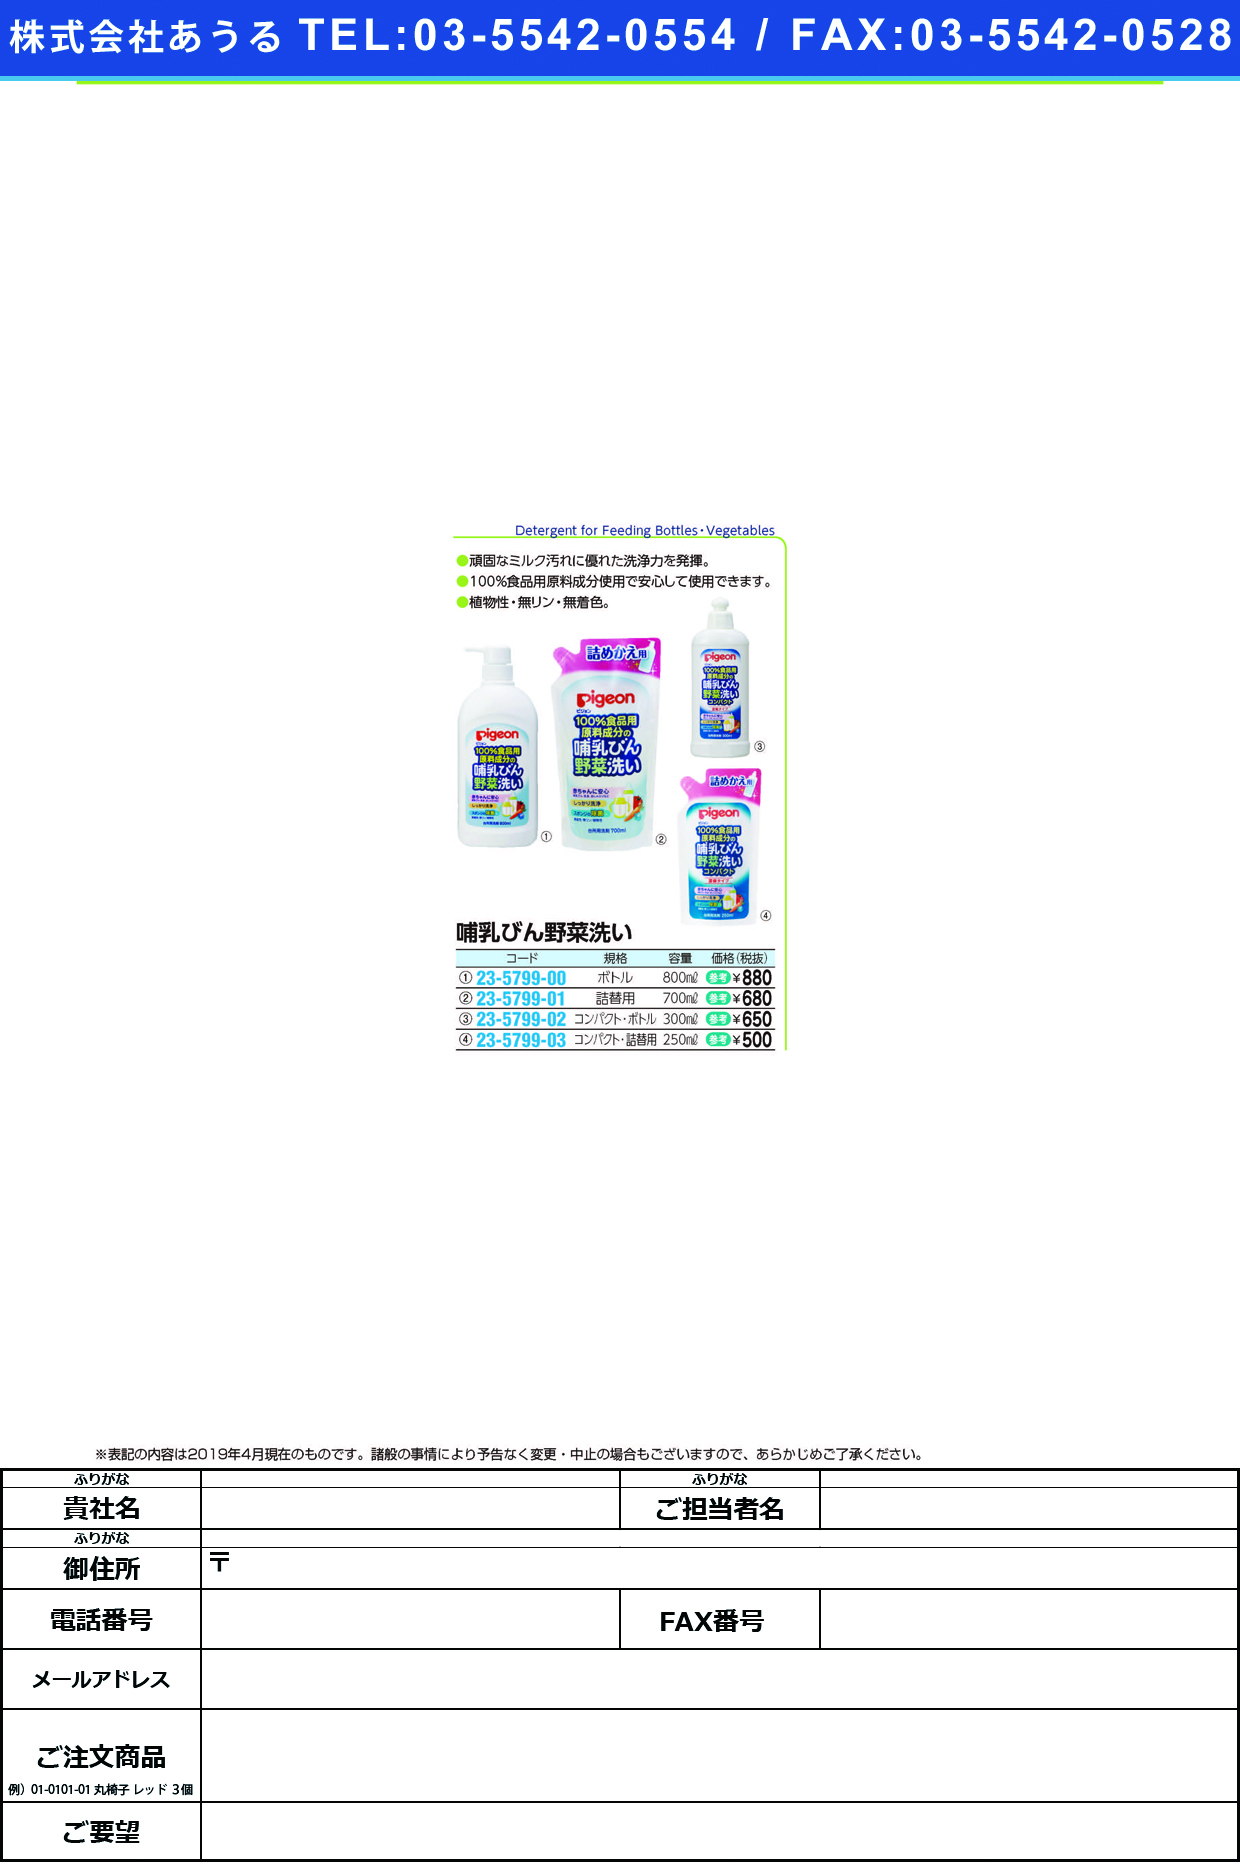 (23-5799-02)哺乳びん野菜洗いコンパクト 12113(300ML) ﾎﾆｭｳﾋﾞﾝﾔｻｲｱﾗｲｺﾝﾊﾟｸﾄ(ピジョン)【1個単位】【2019年カタログ商品】